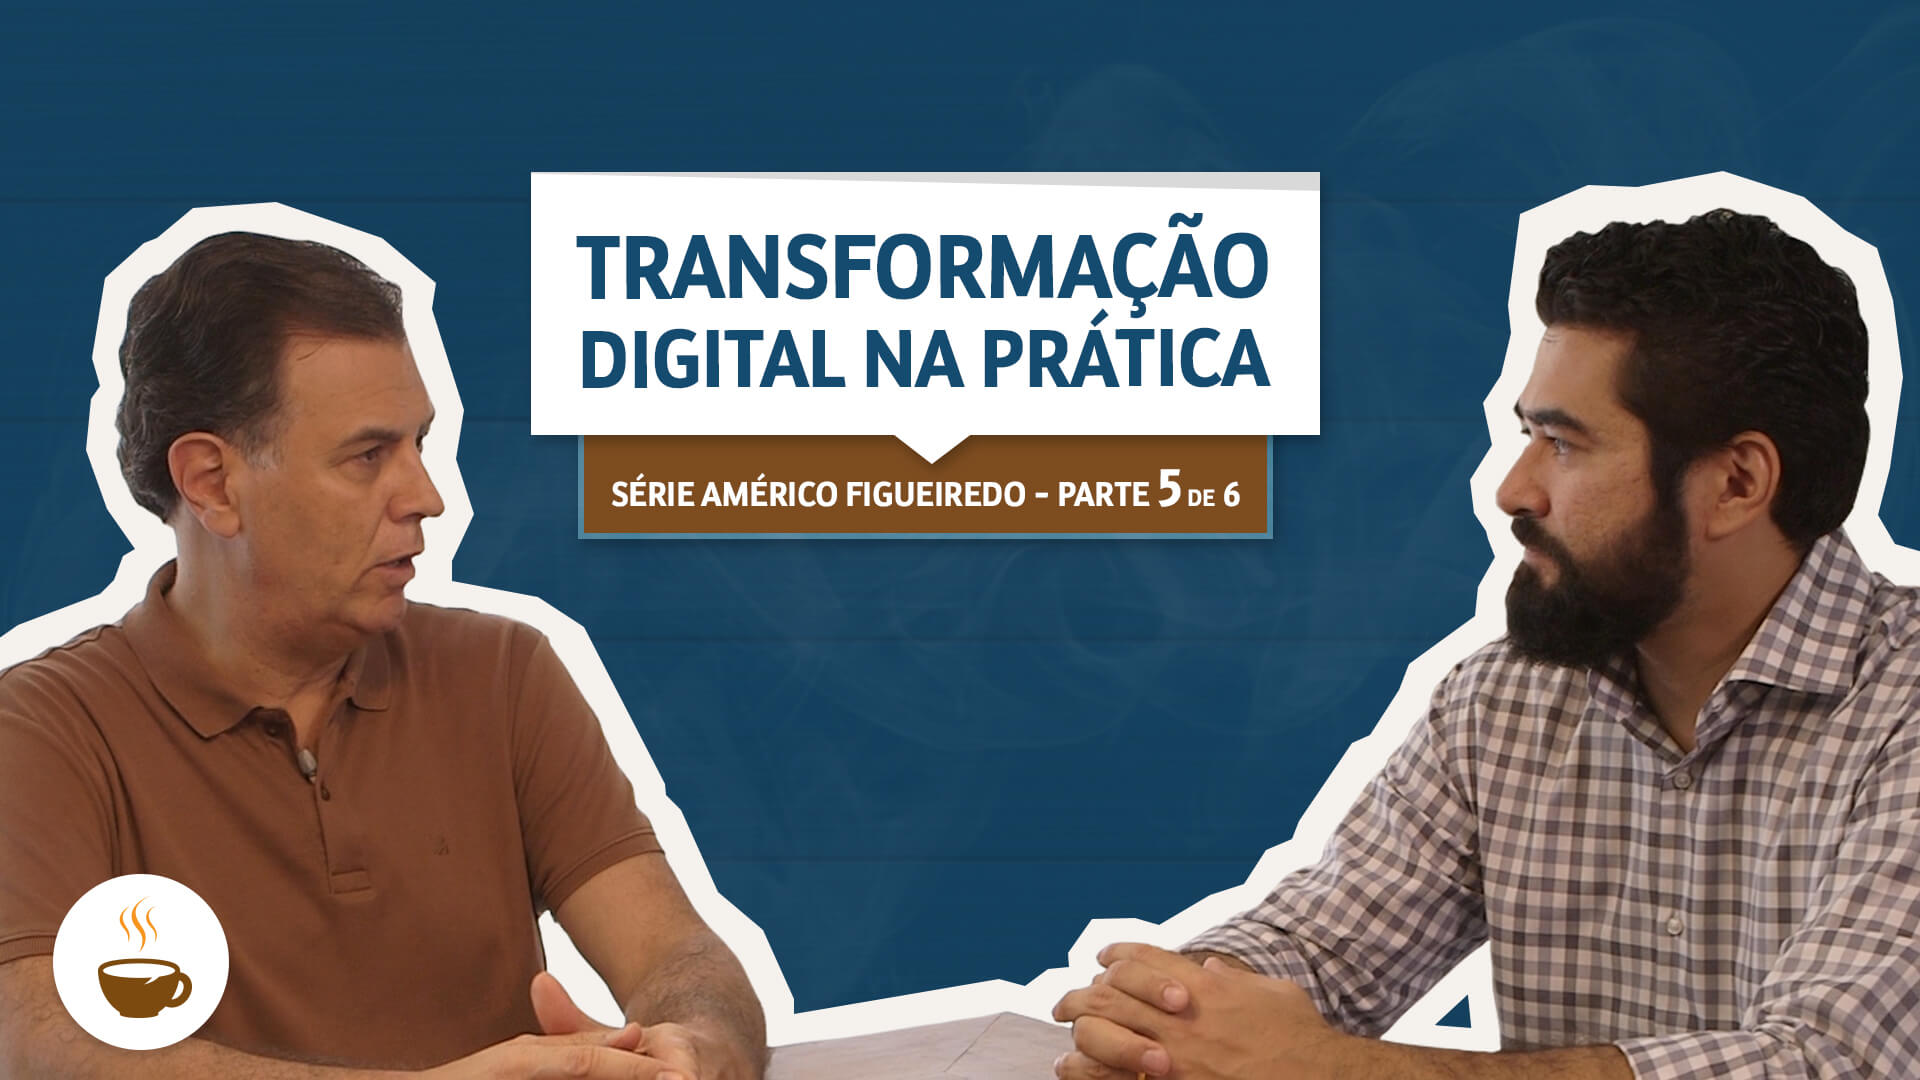 Prof. Wagner Cassimiro conversando com Américo Figueiredo sobre Transformação digital na prática